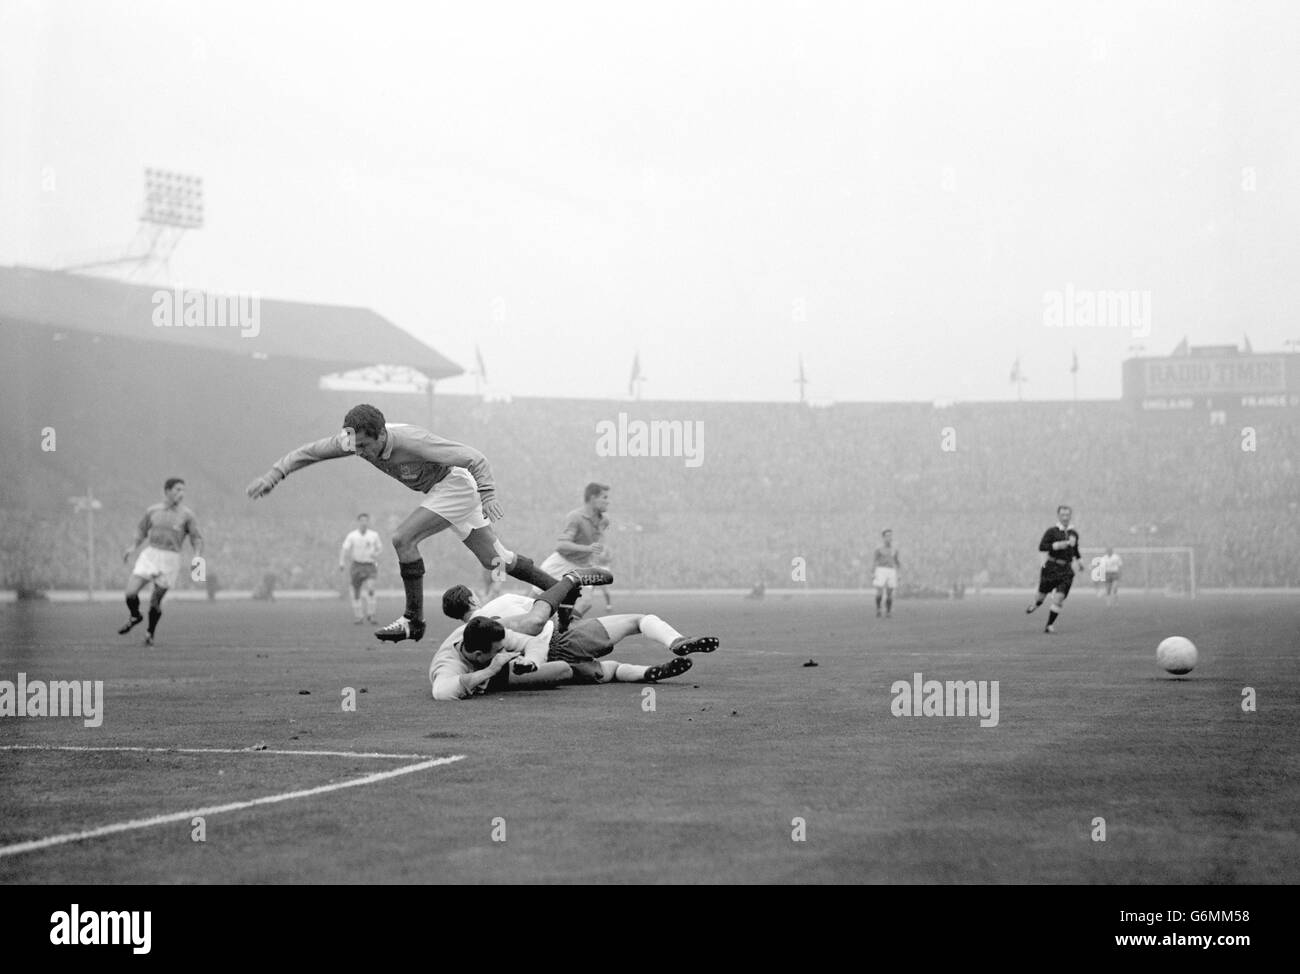 Frankreichs Torhüter Claude Abbes geht mit dem Engländerin Bobby Robson in die Höhe, während Frankreichs Mustapha Zitouni bei einem England-Angriff auf das französische Tor in Wembley über die Spitze springt. Mustapha Zitouni würde 1958 vor dem WM-Finale Frankreich verlassen, um für seine Heimat Algerien zu spielen. Stockfoto